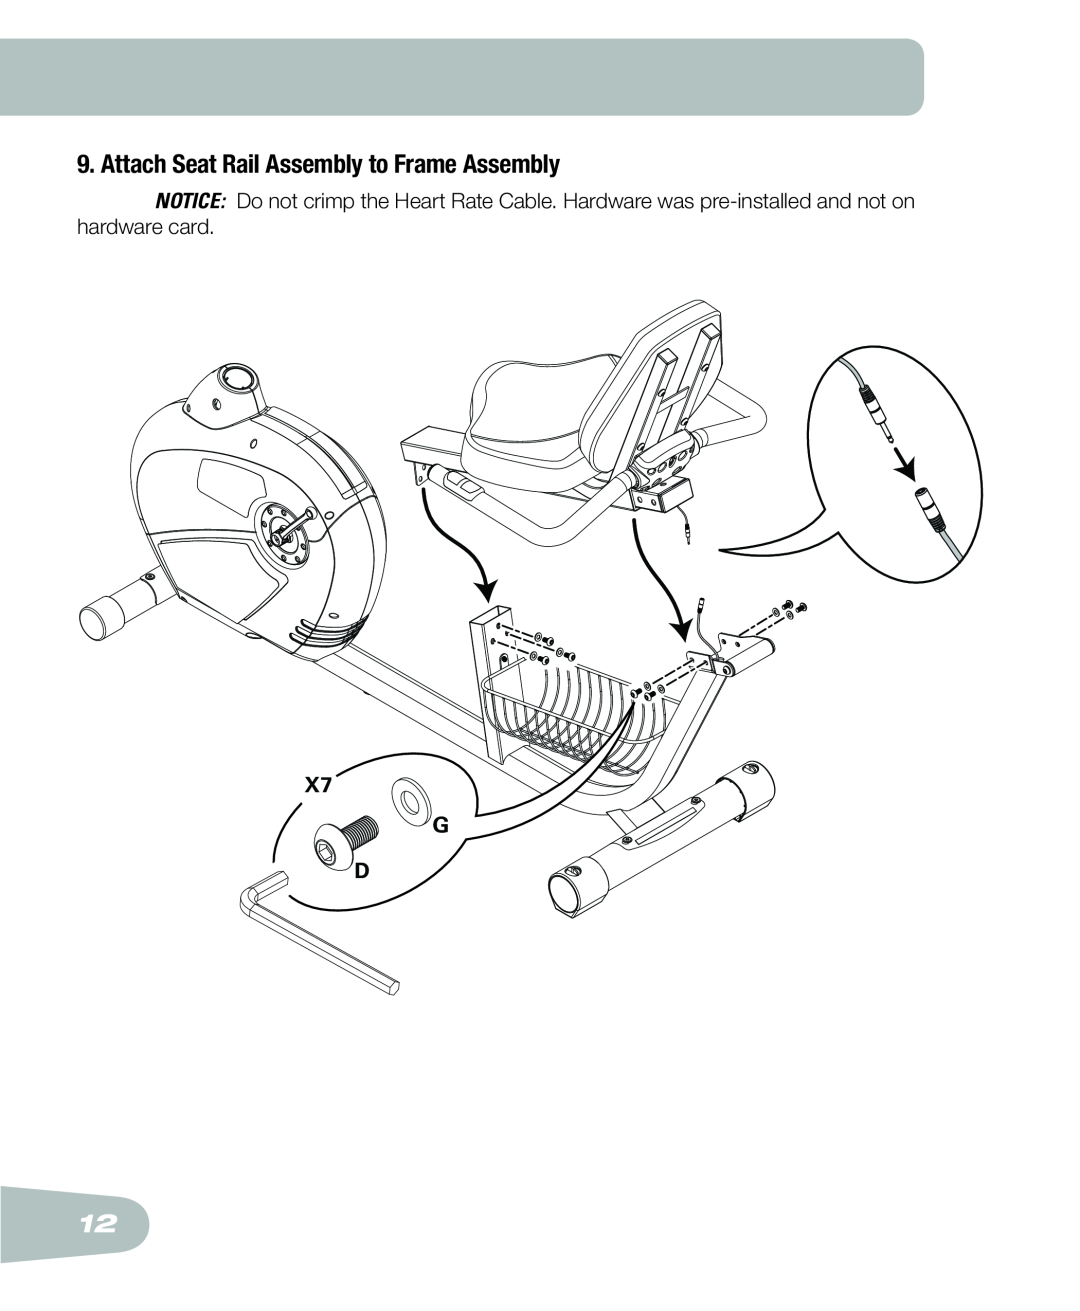 Schwinn 250 schwinn manual Attach Seat Rail Assembly to Frame Assembly, X7 G D 